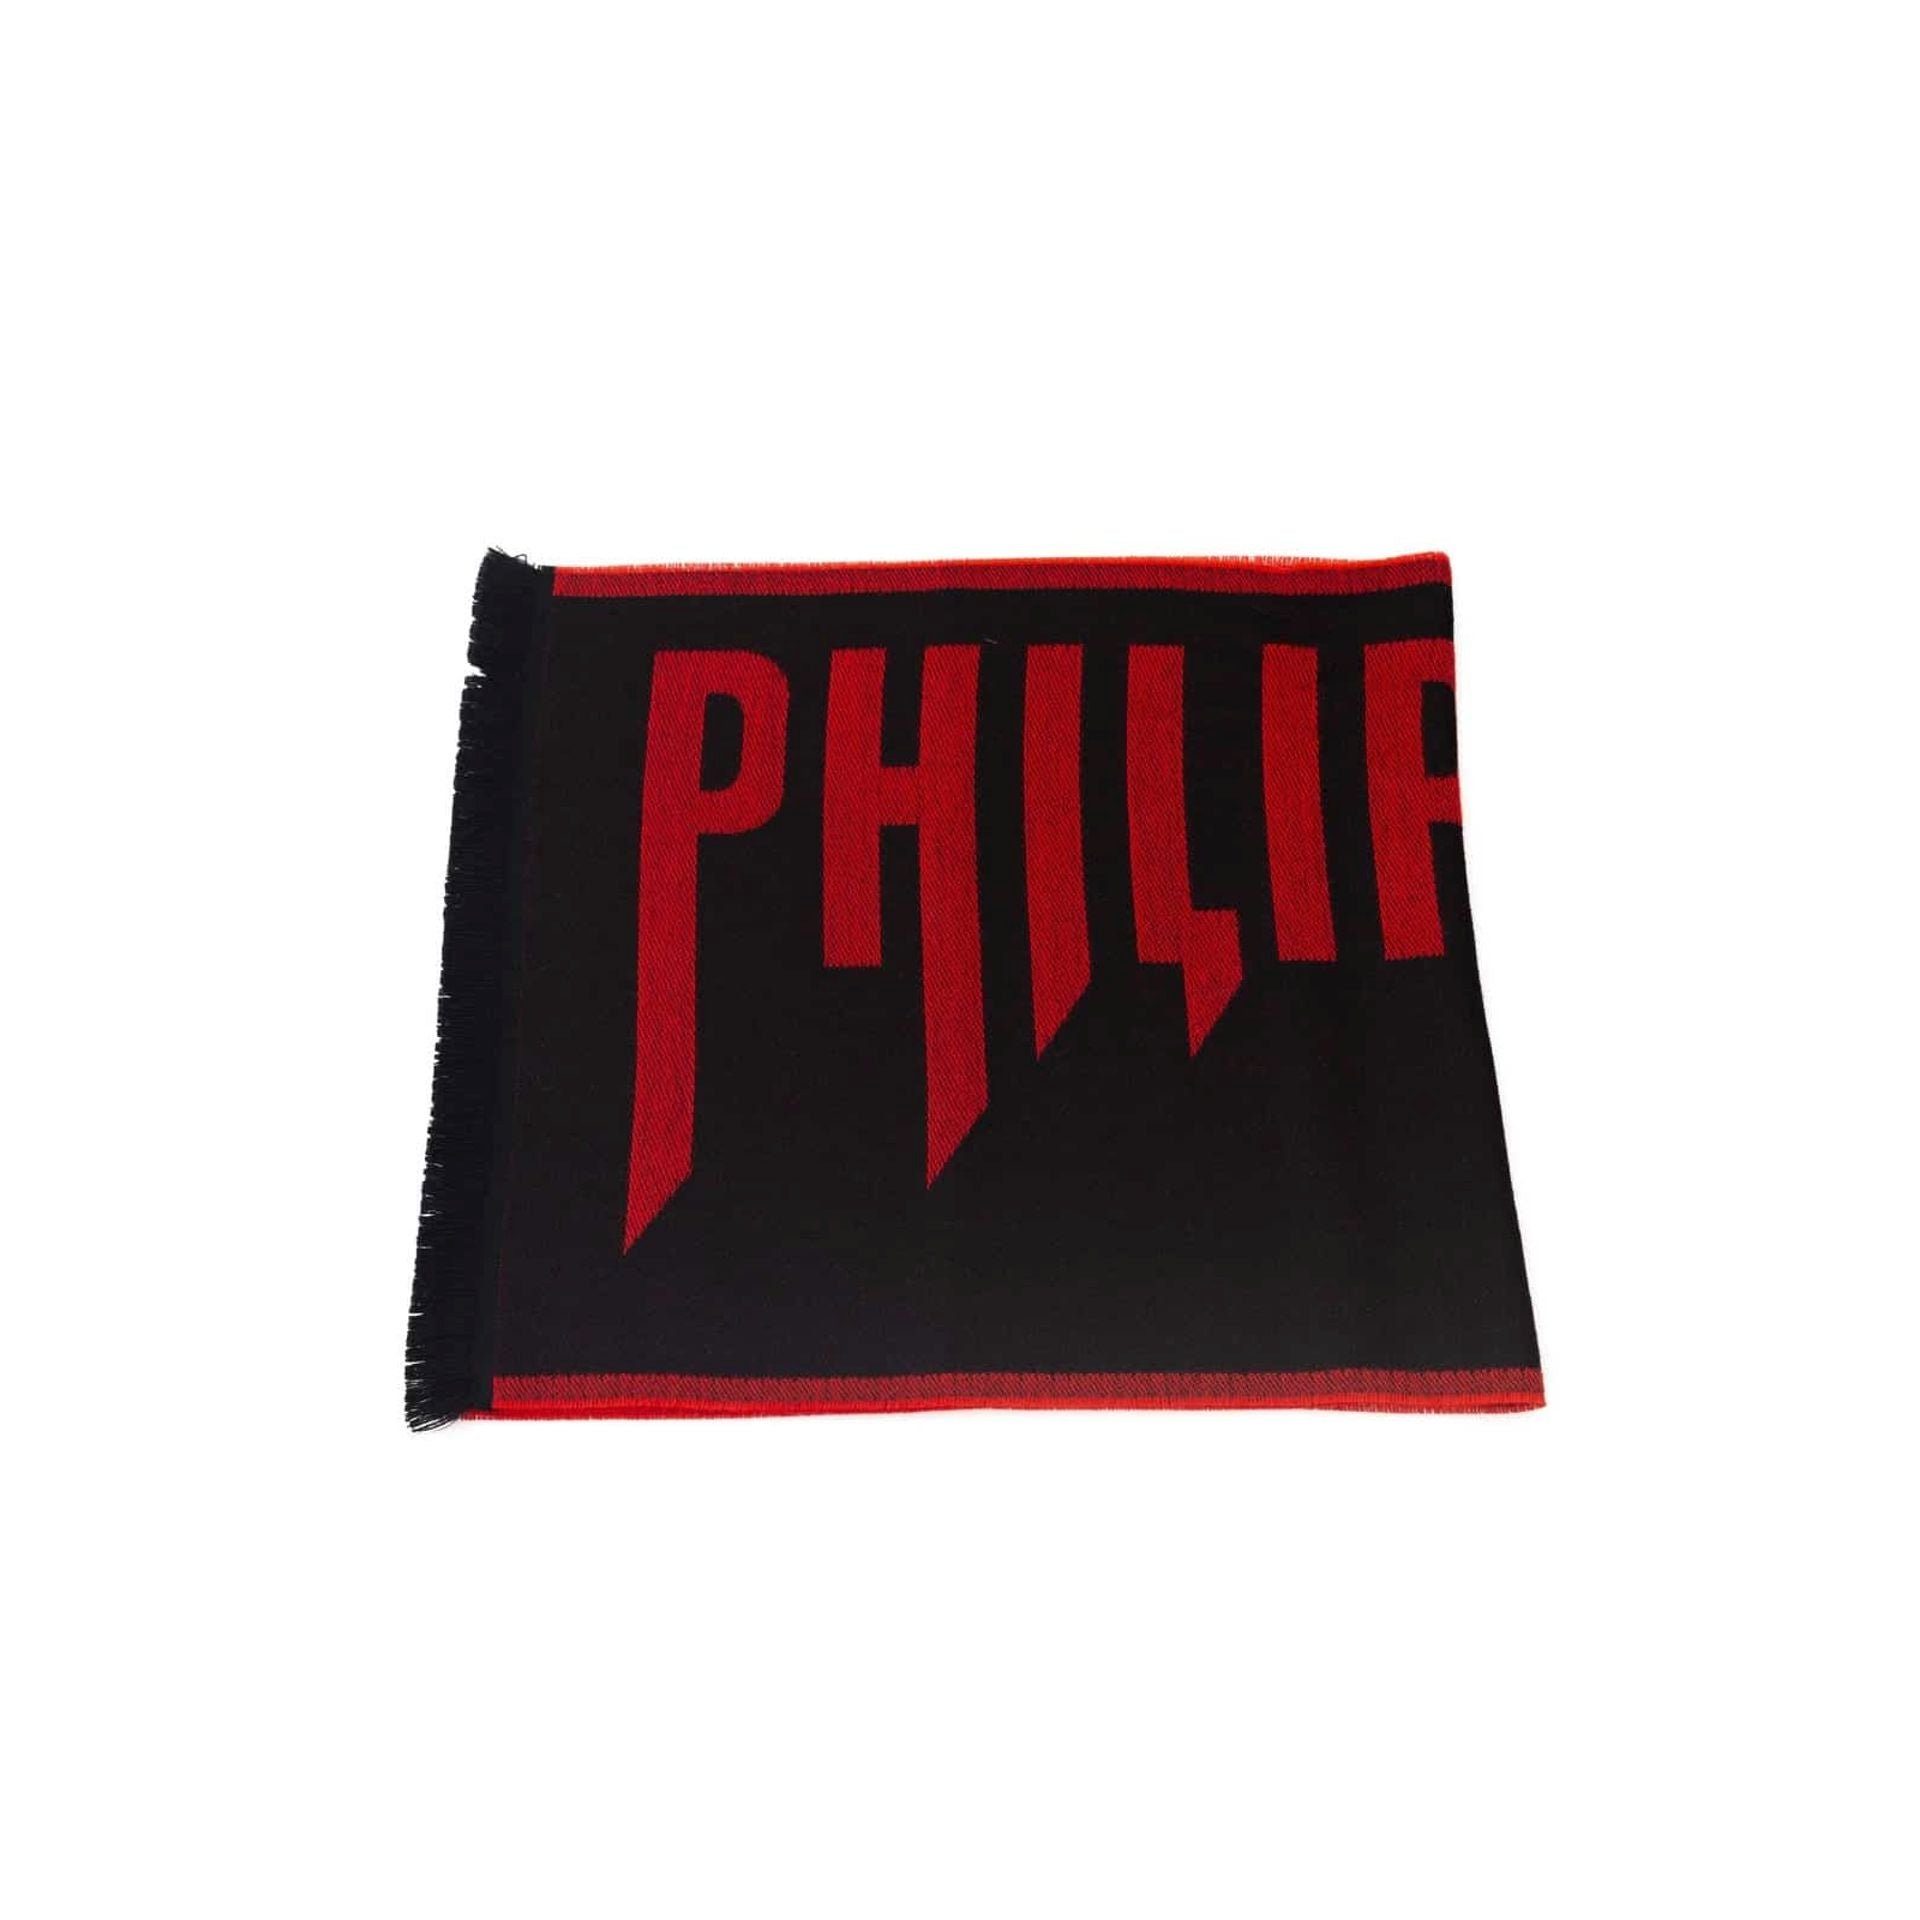 PHILIPP PLEIN Schal Philipp Plein, Herren Schal, Schwarz-Rot, Exklusive Designs für den modernen Mann